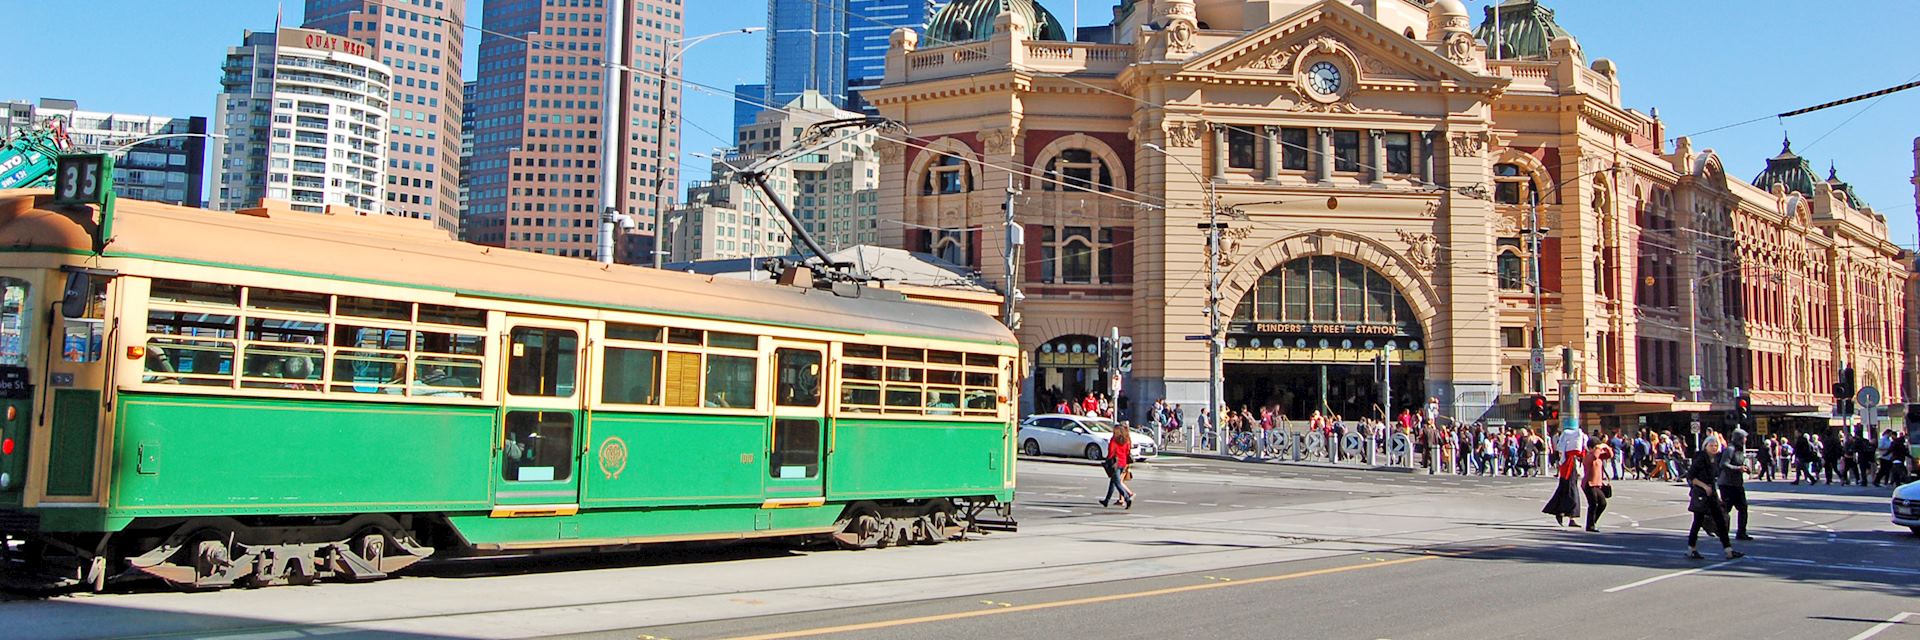 Tram at Flinders Street Station, Melbourne